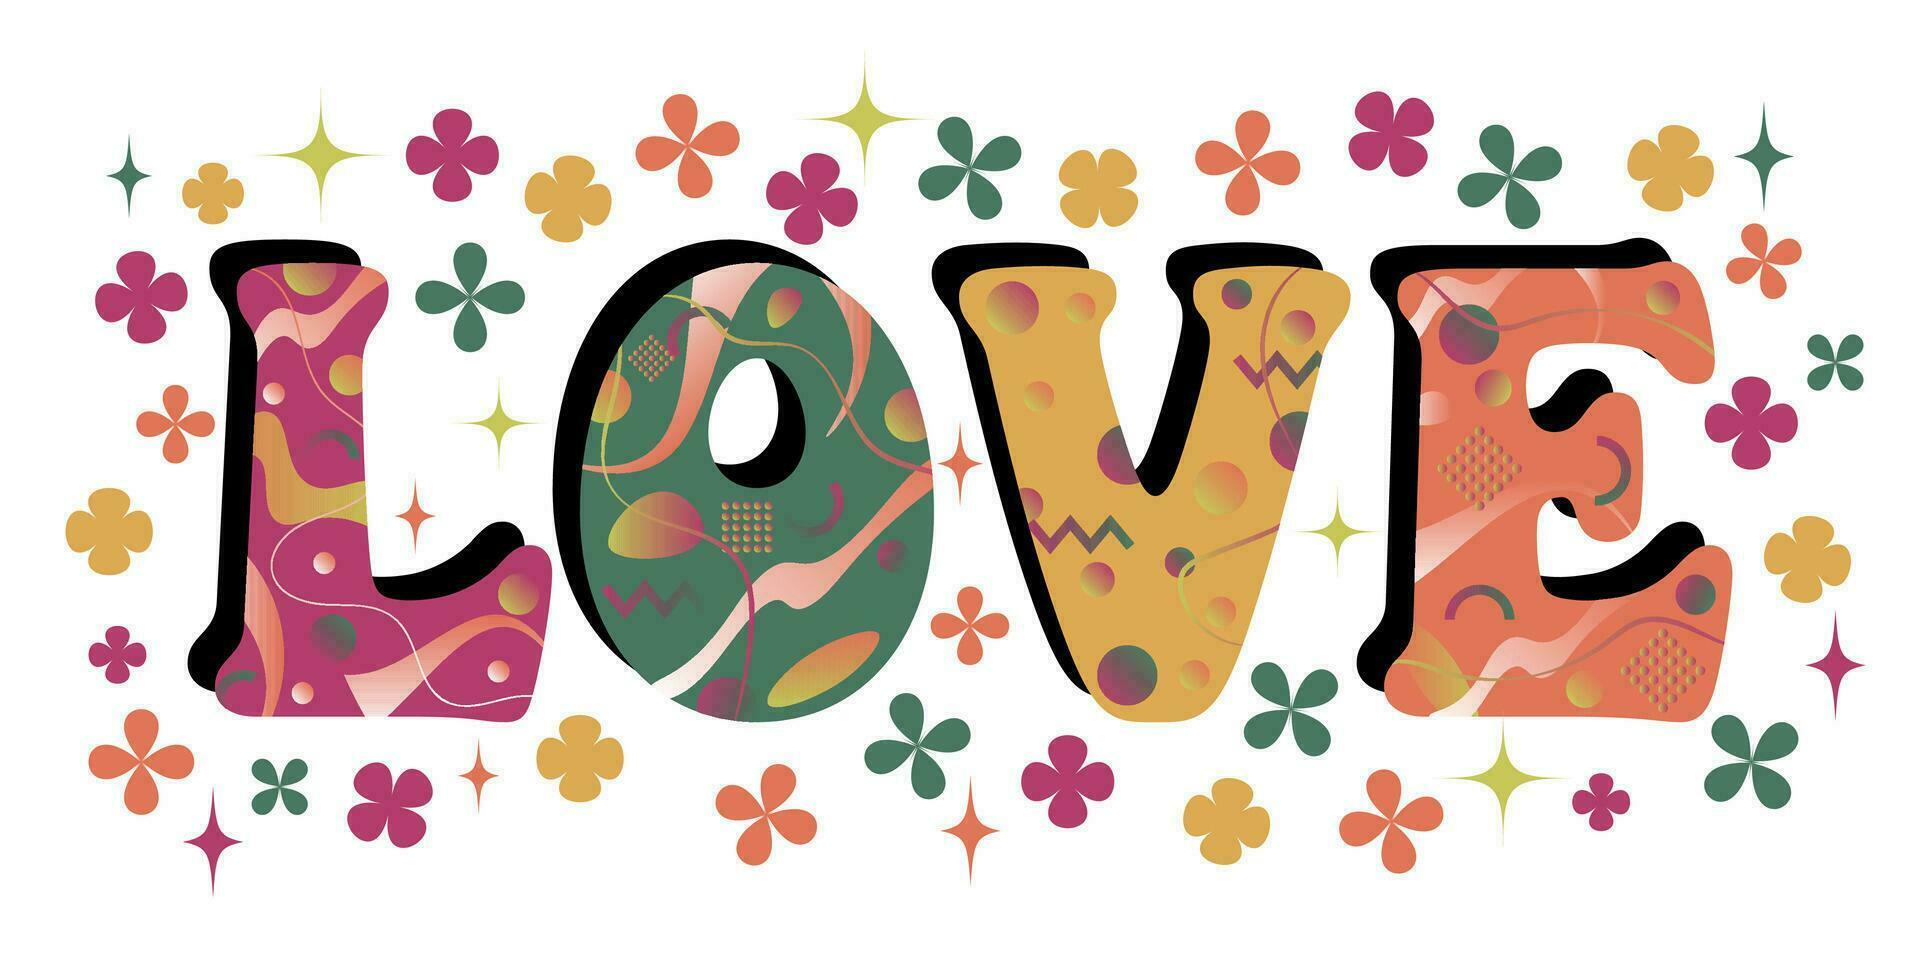 amor en estilo años 60 psicodélico tipografía con flores y estrellas. San Valentín día amor mensaje. vector